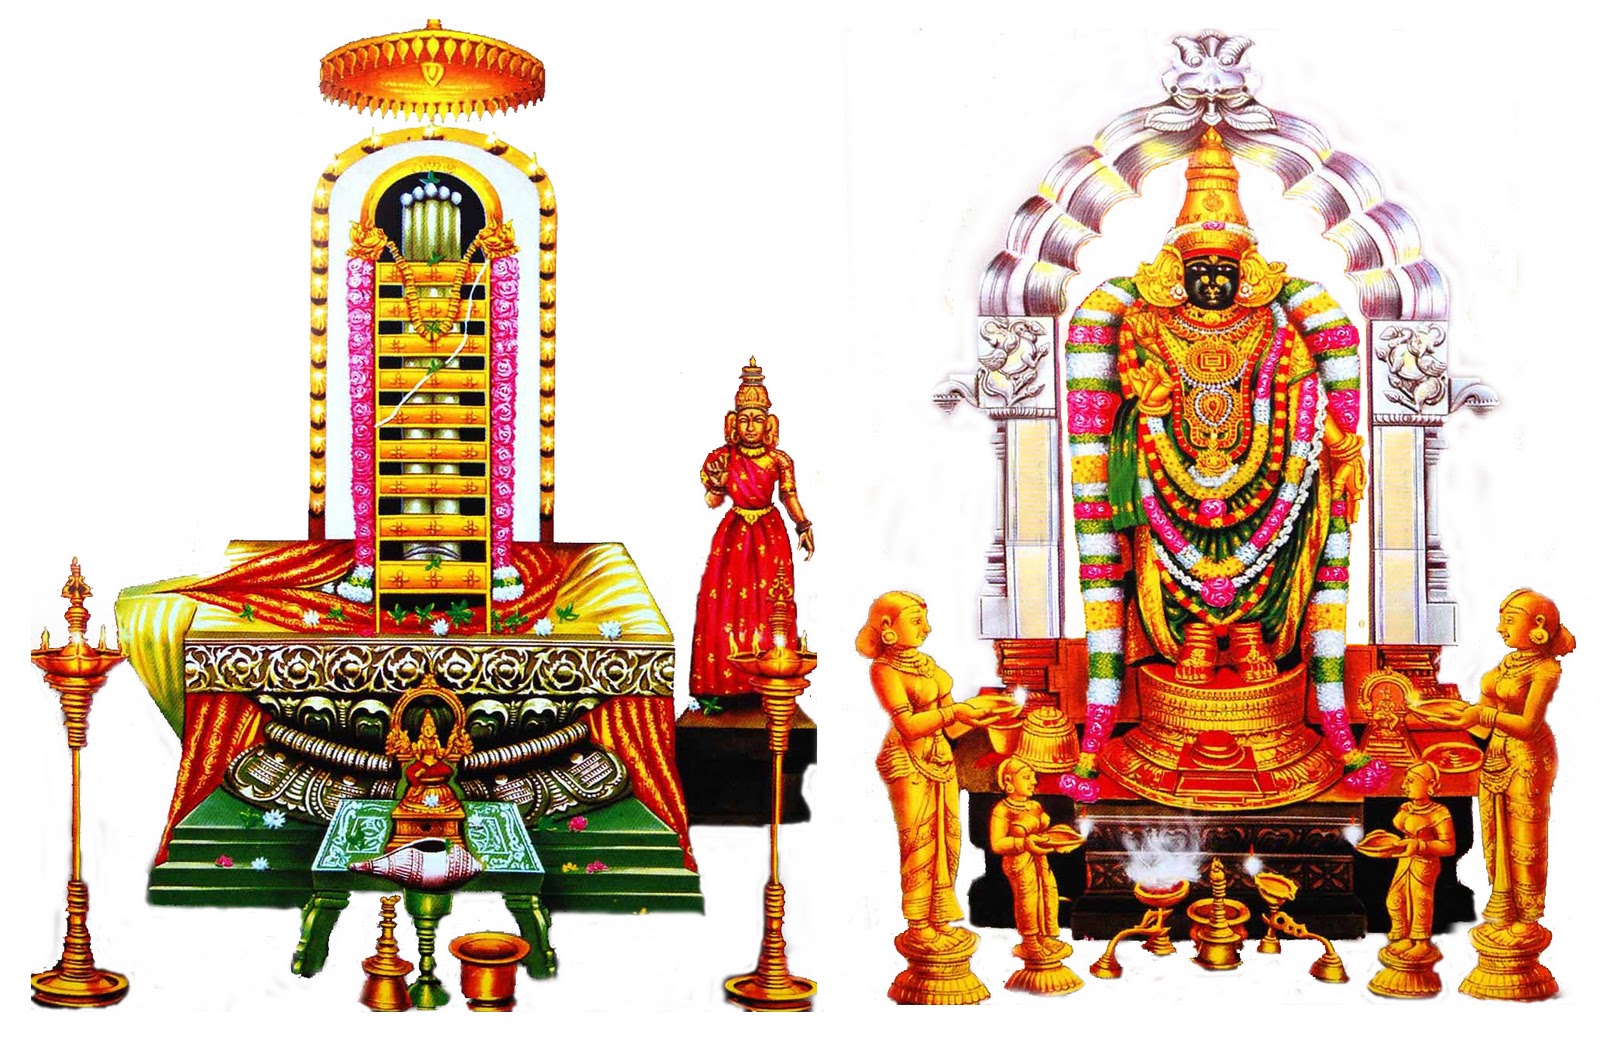 శ్రీ కాళహస్తీశ్వర దేవాలయం - Sri Kalahastiswara Temple